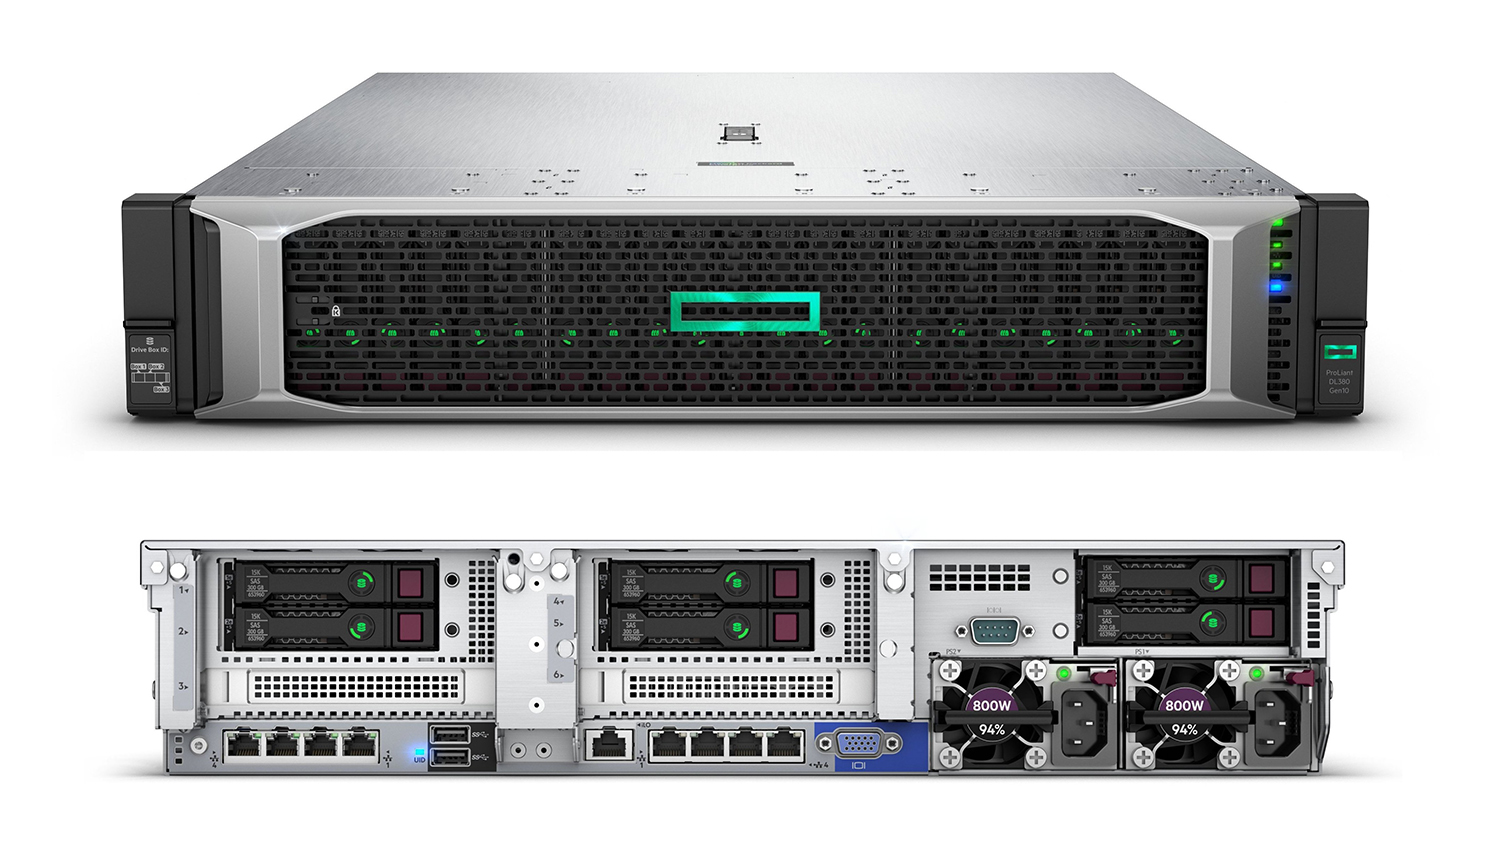 HP ProLiant DL380 Gen10 server